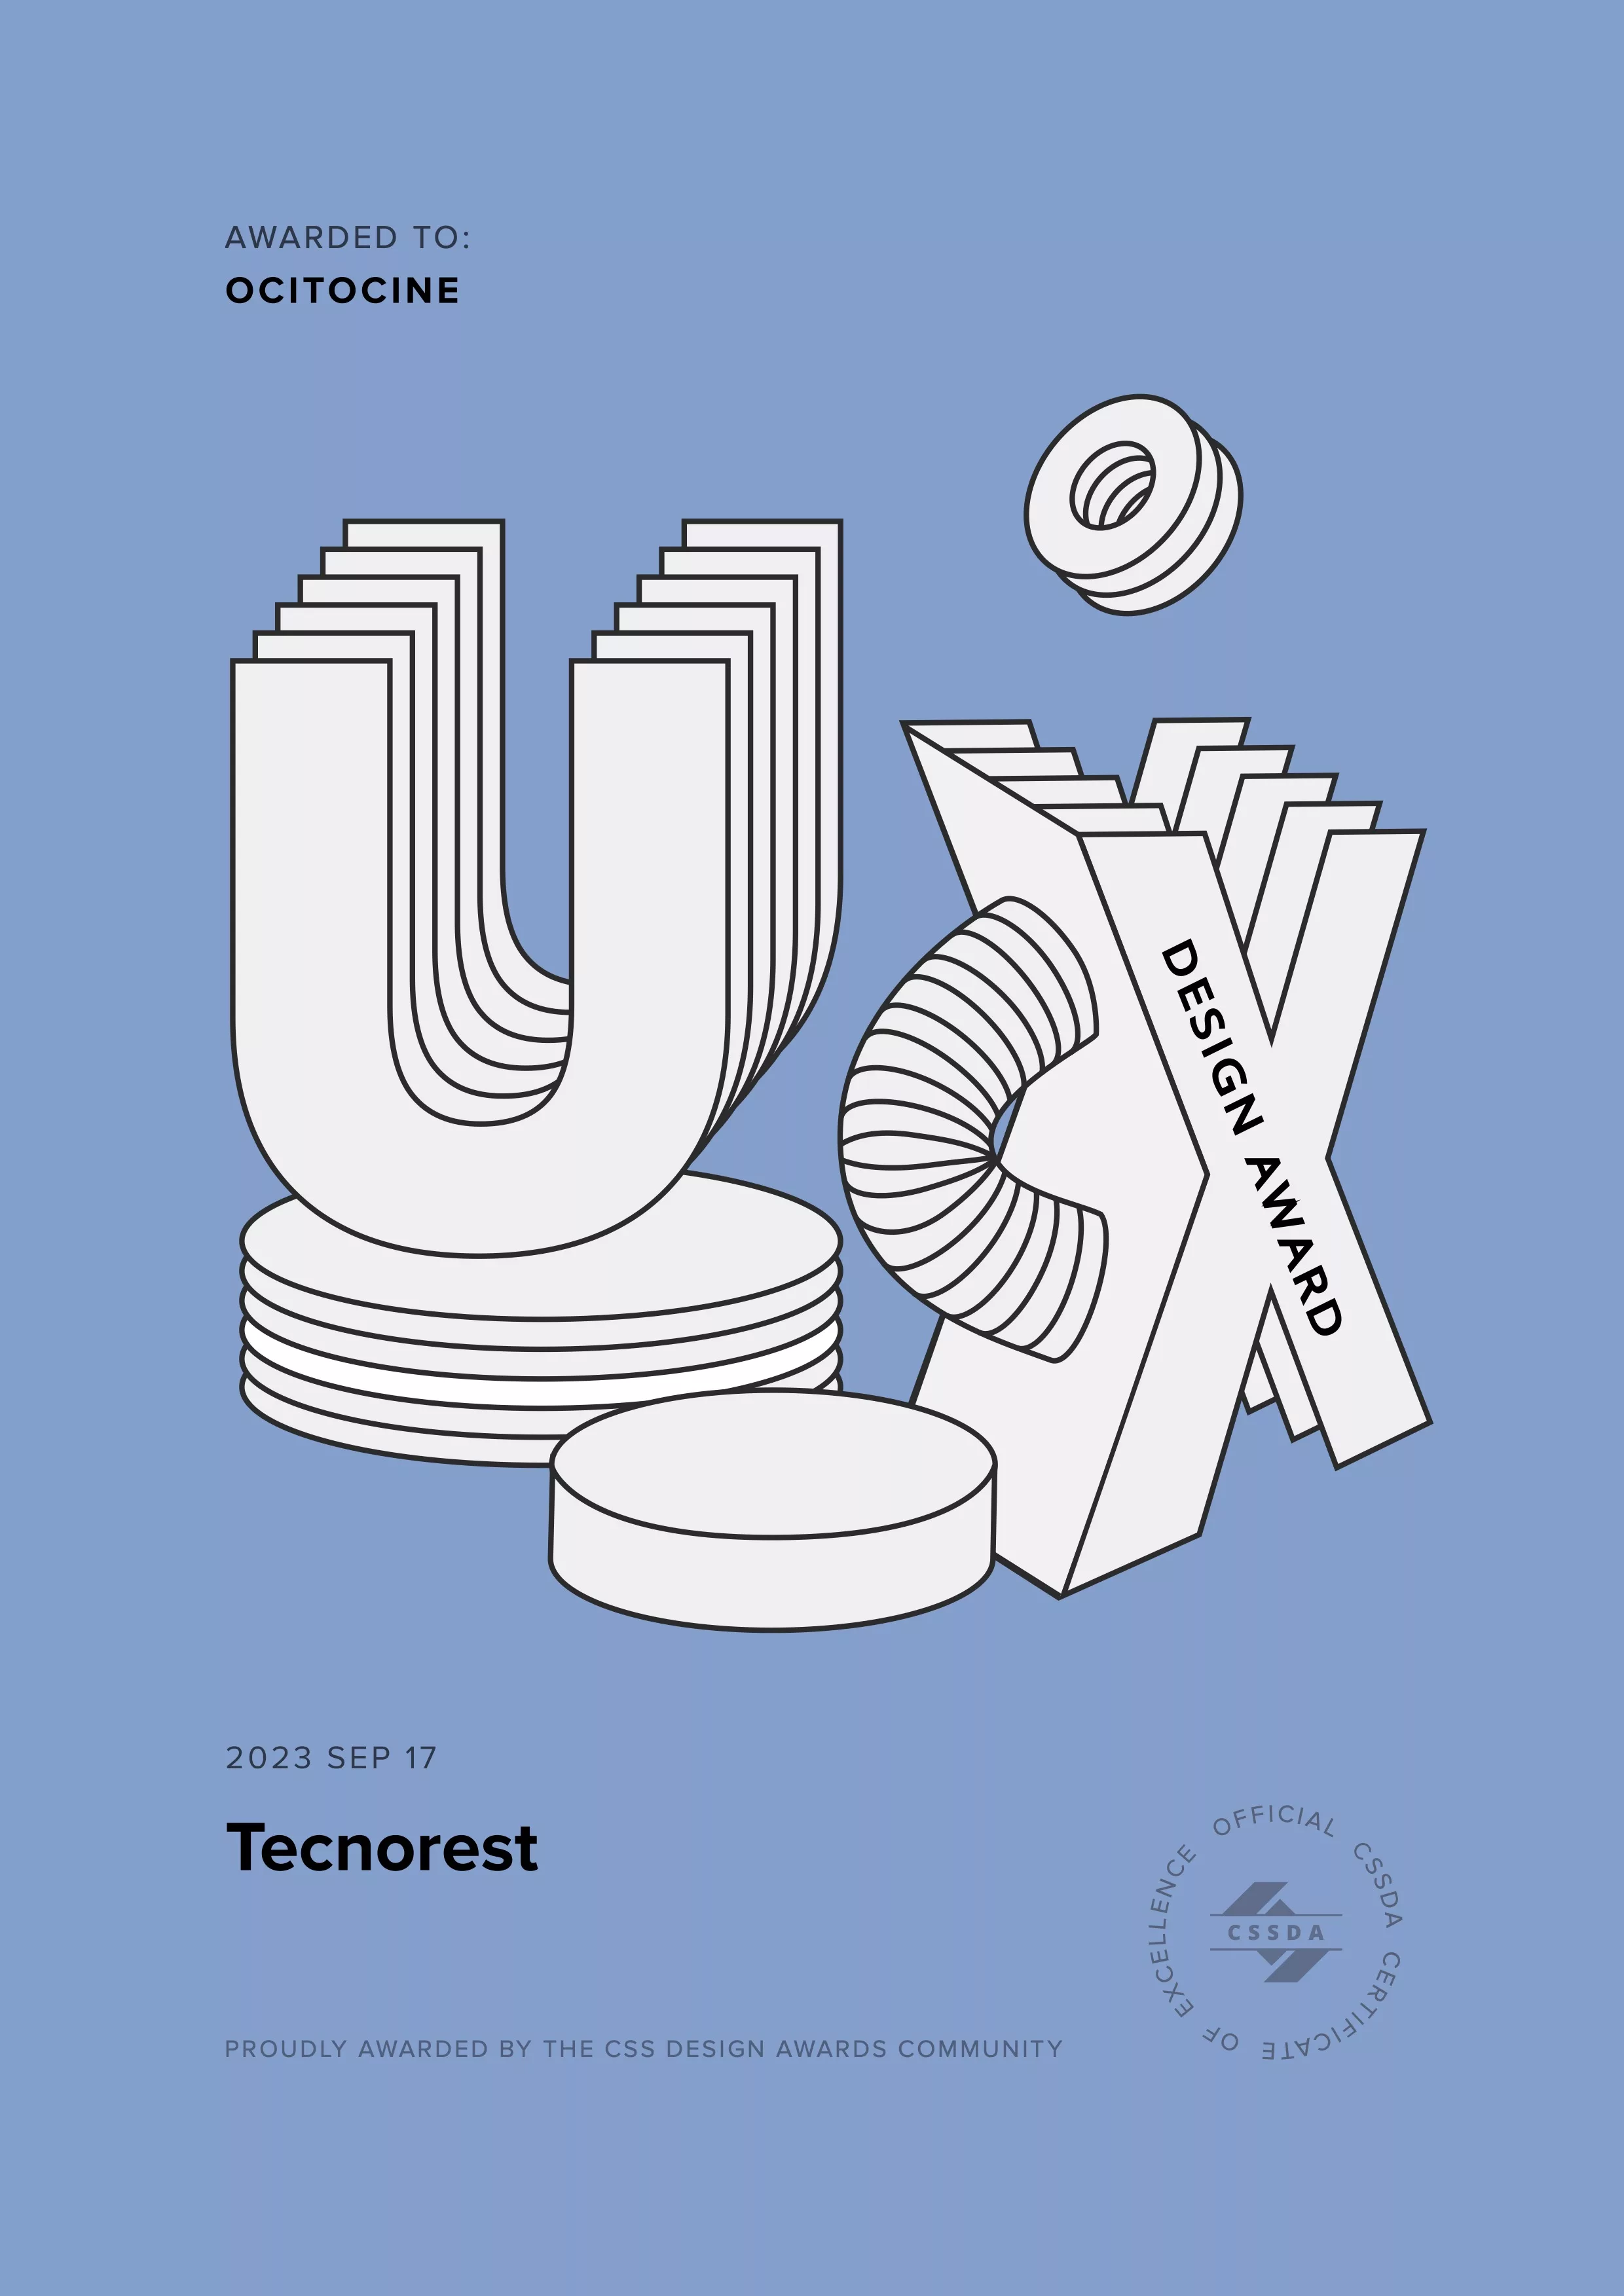 Ocitocine, agence créative web et branding, a remporté un prix "CSSDA UX Design Award" pour la réalisation du site web tecnorest.fr